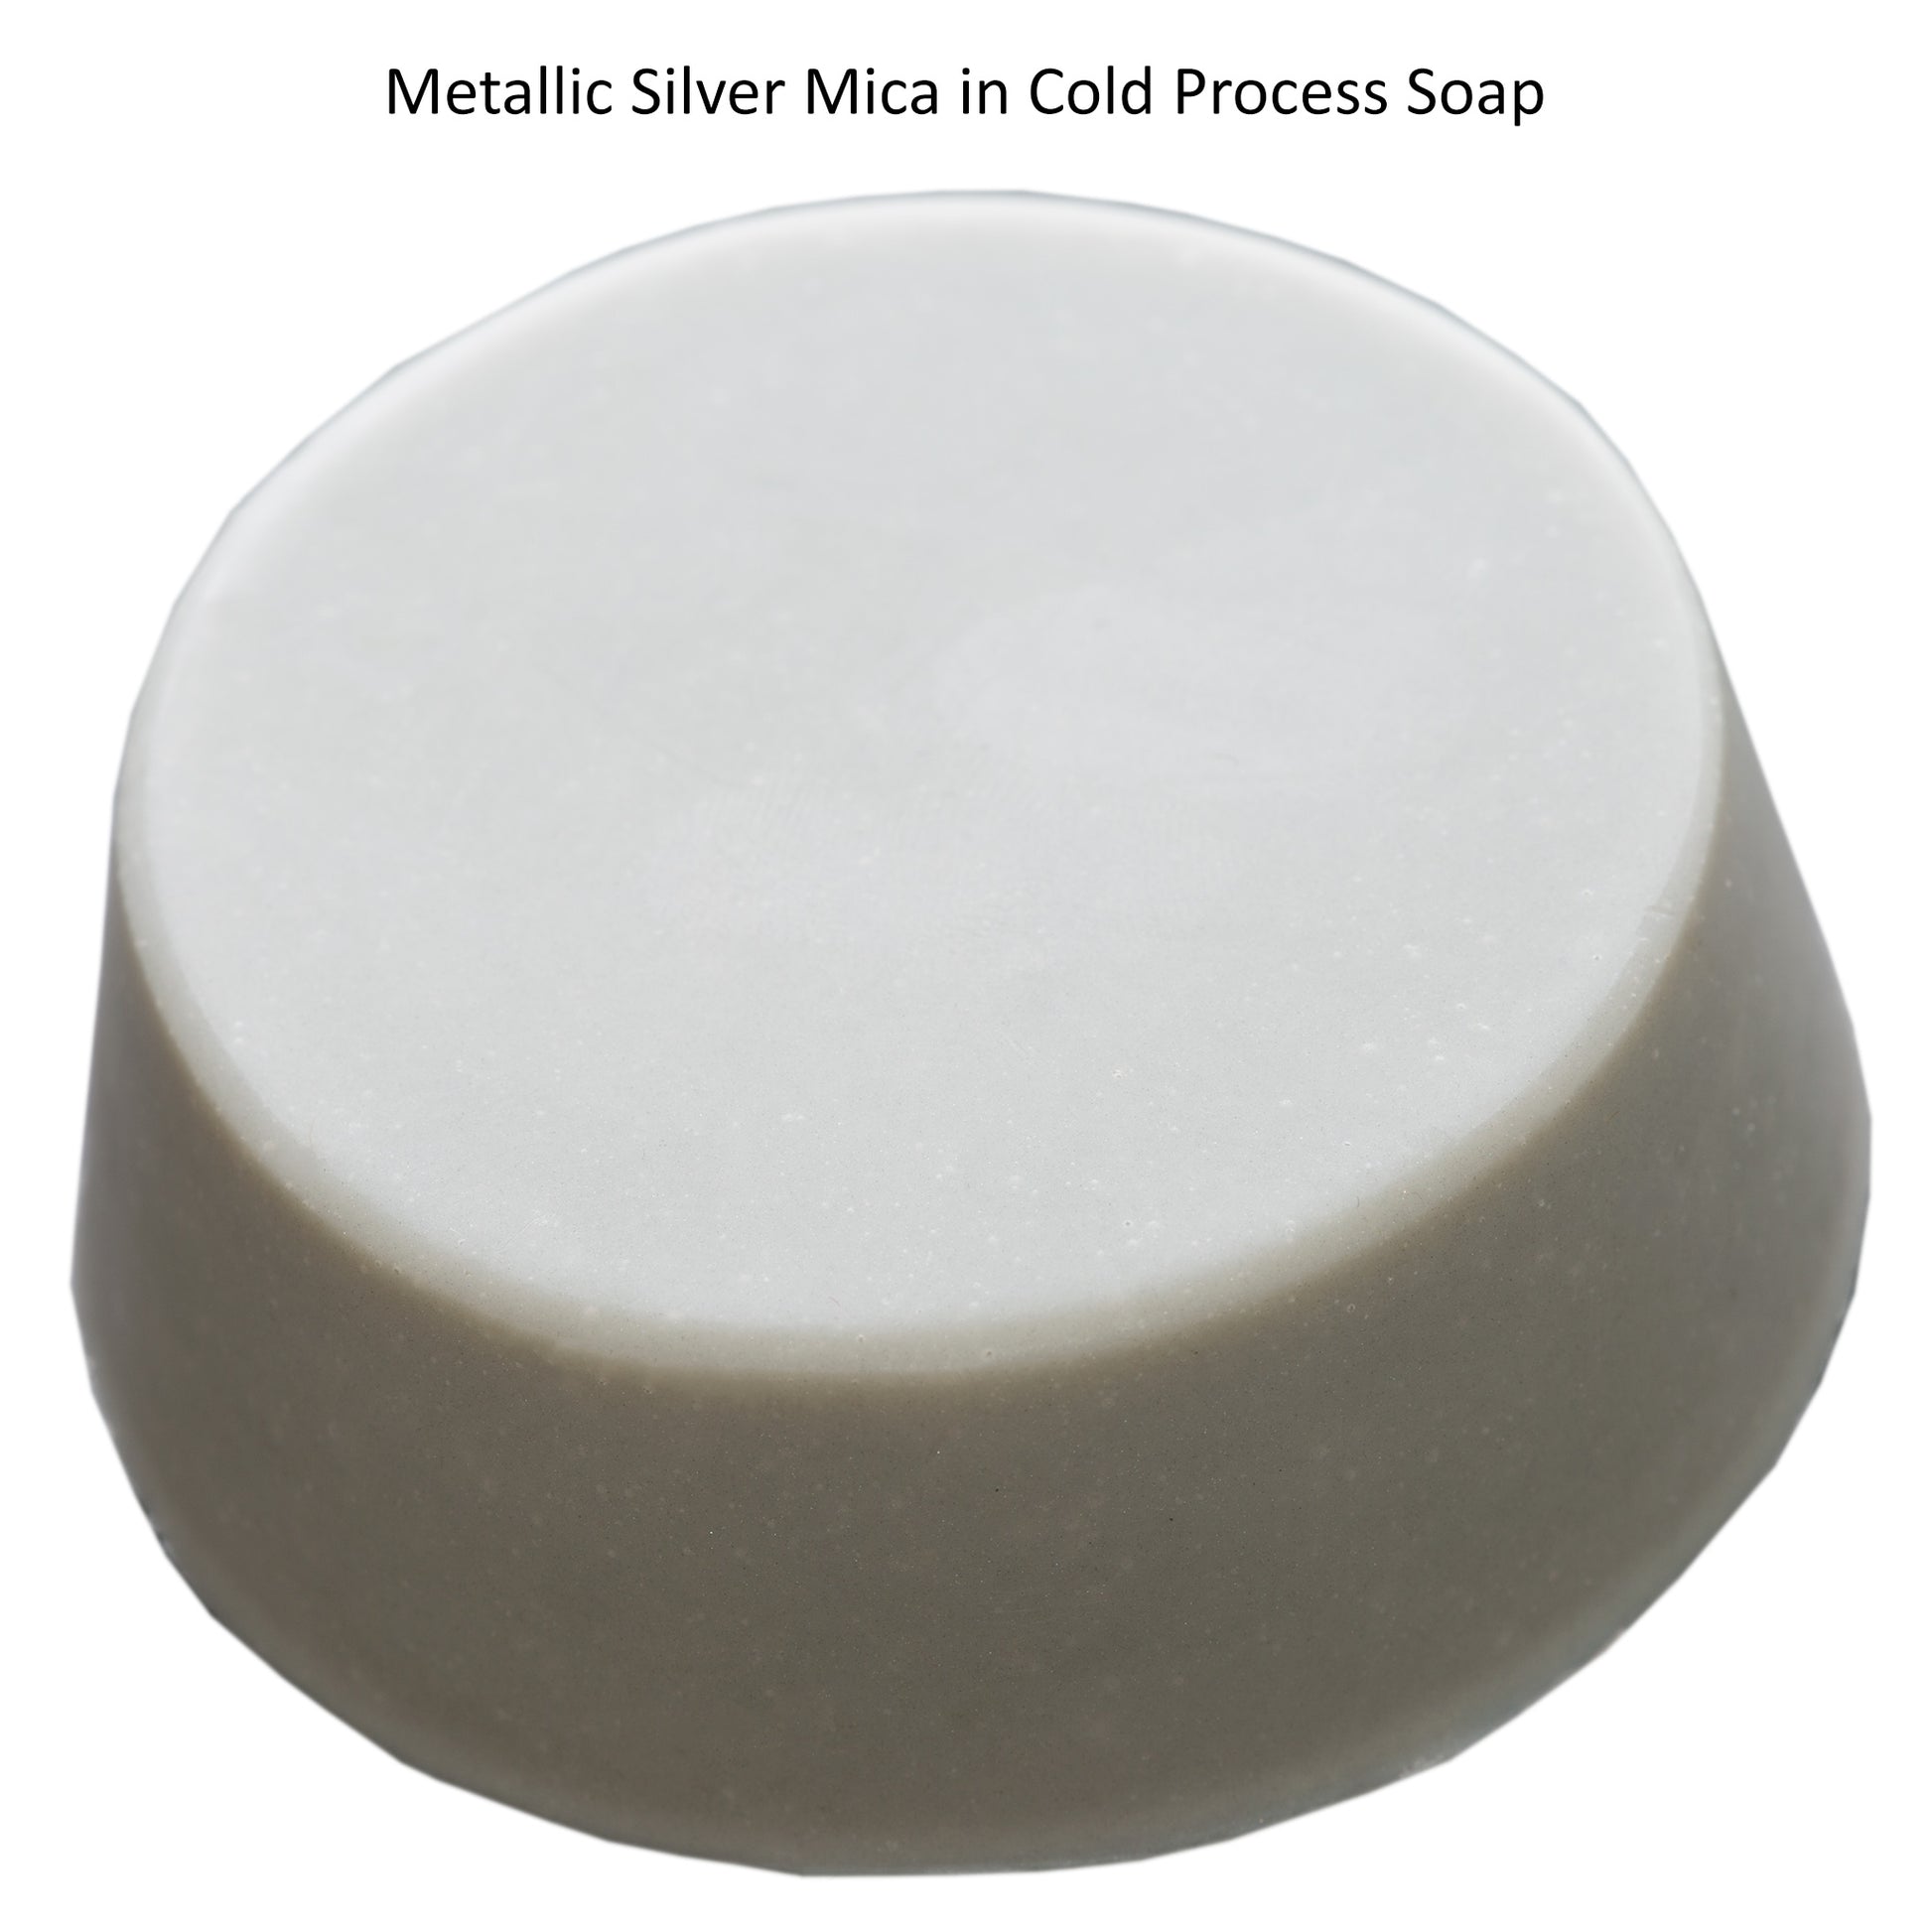 Metallic Silver Mica